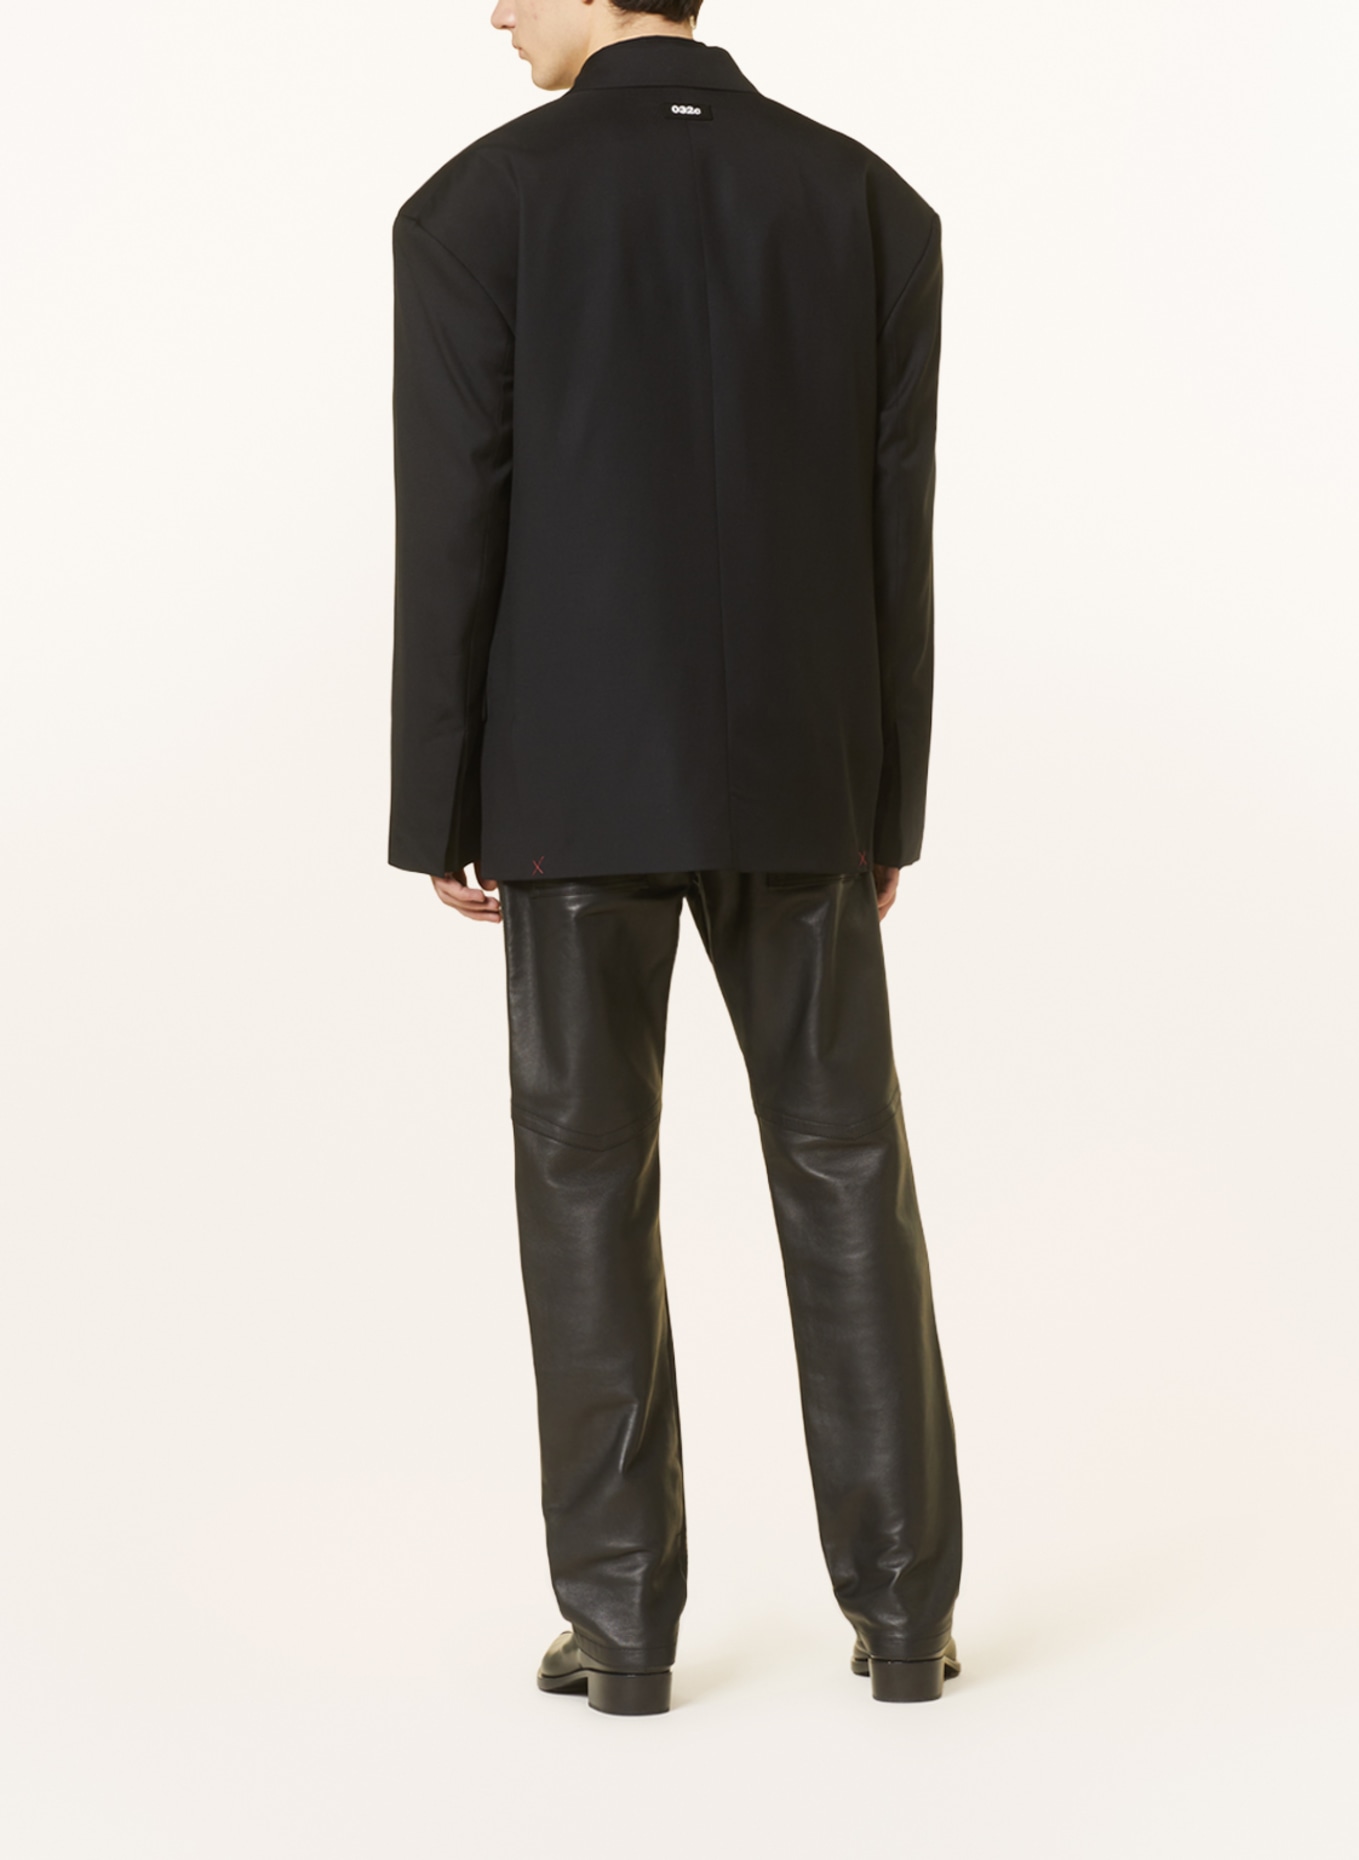 032c Tailored jacket ORION regular fit, Color: BLACK (Image 3)